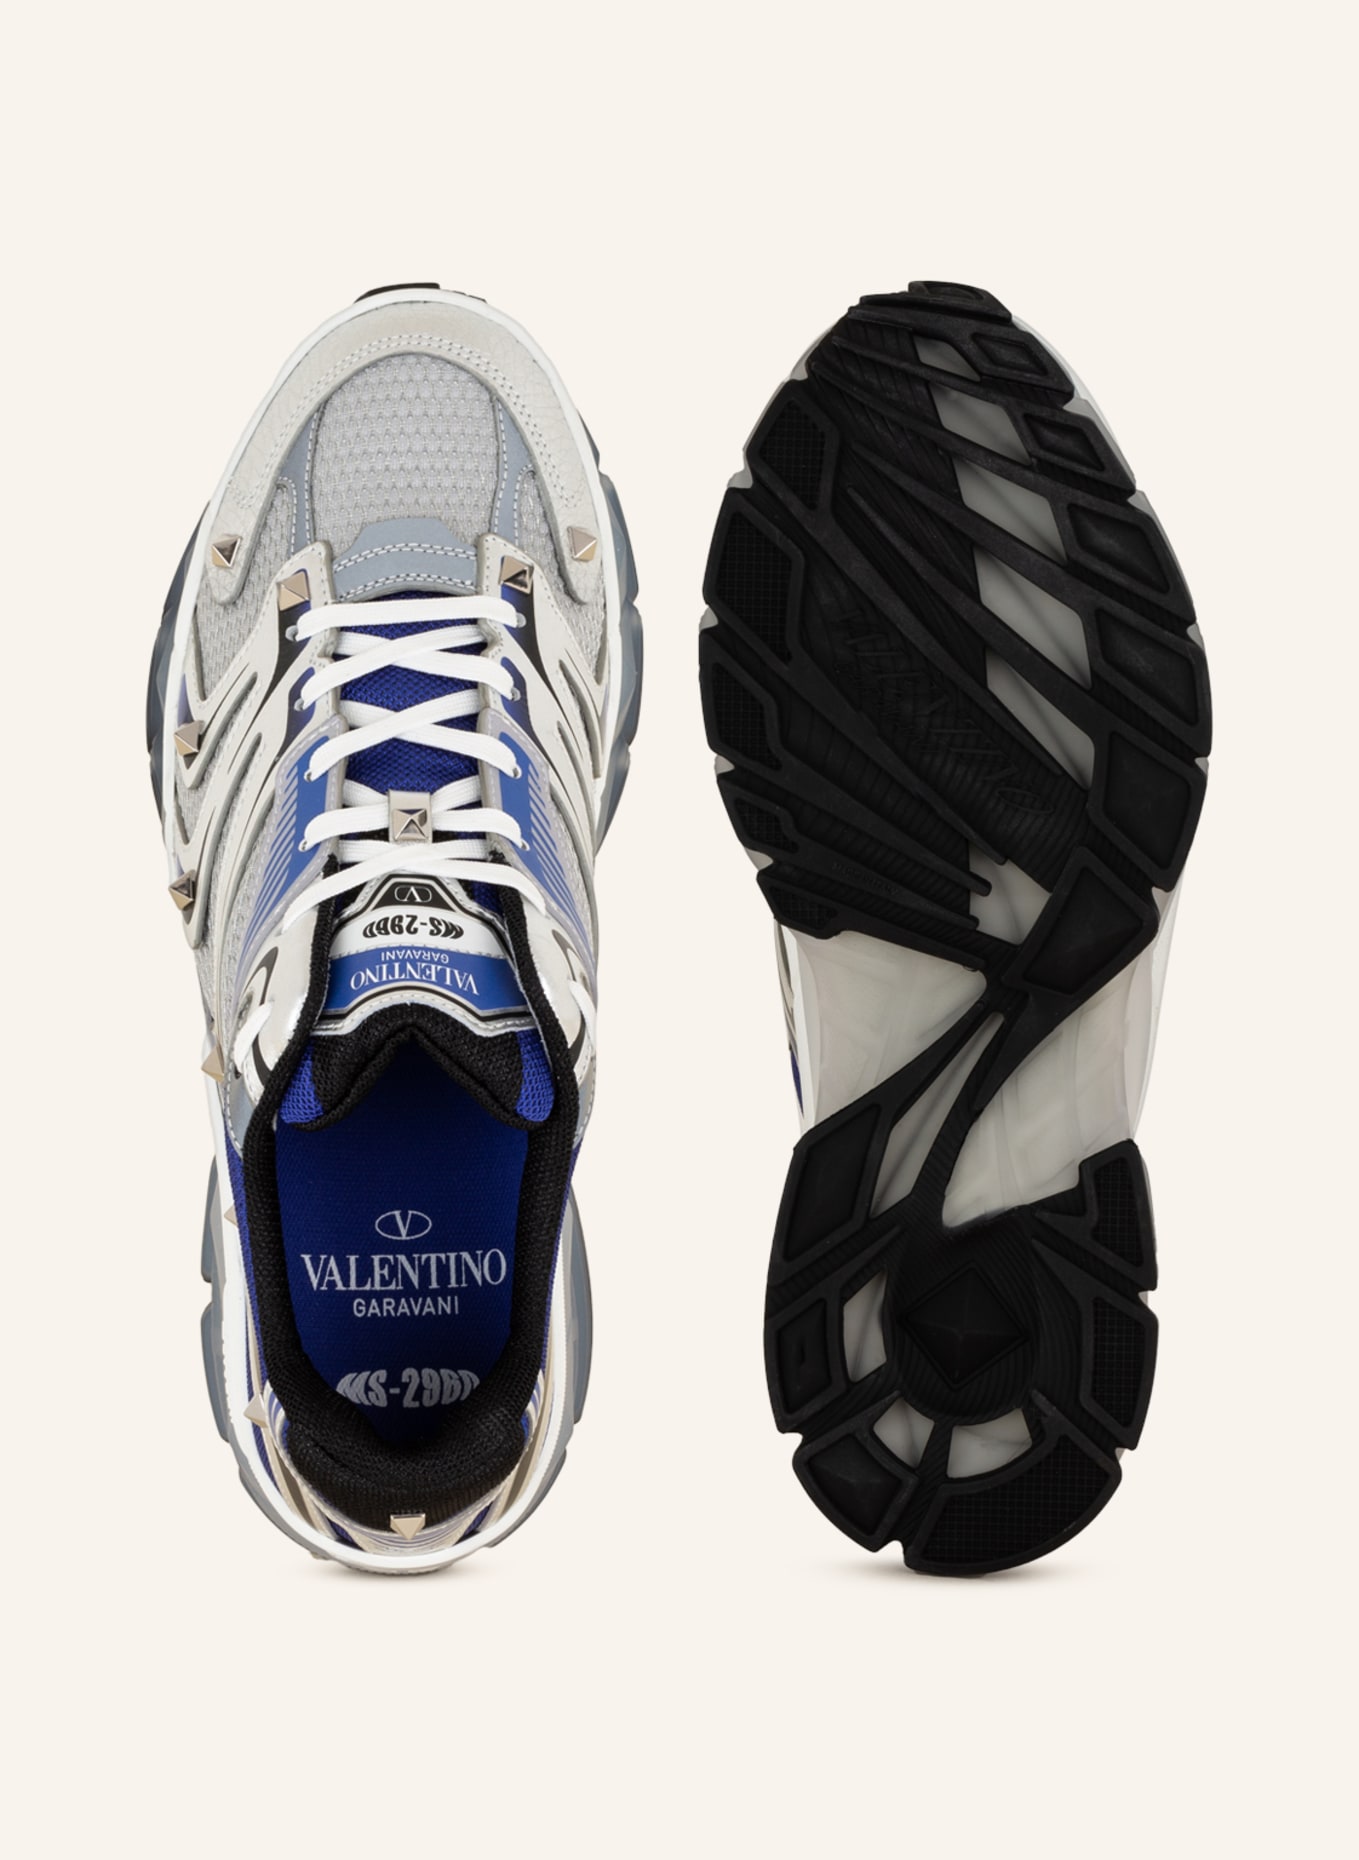 VALENTINO GARAVANI Sneaker MS-2960 mit Nieten, Farbe: BLAU/ SILBER/ SCHWARZ (Bild 5)